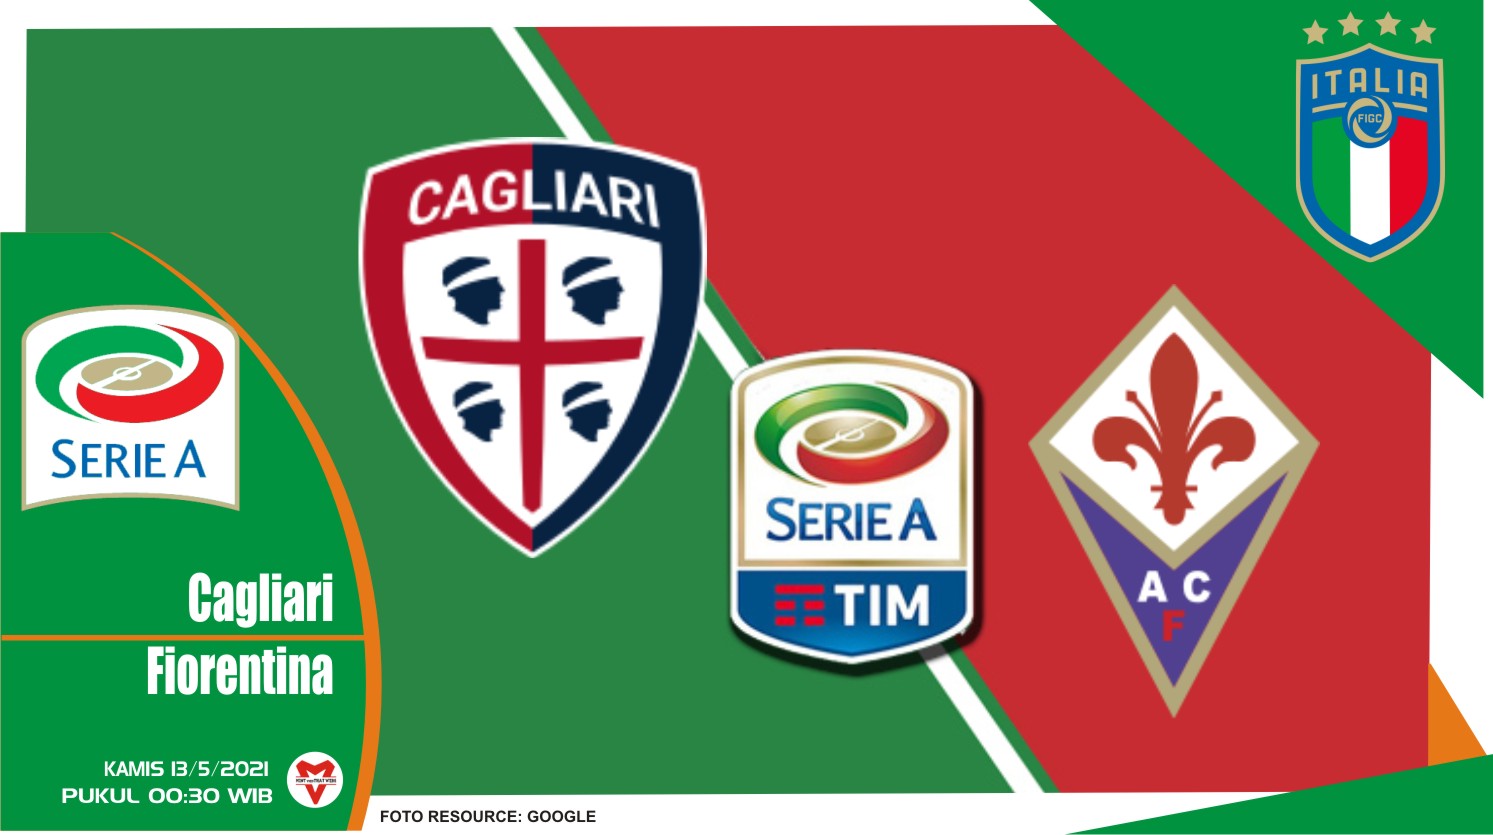 Prediksi Liga Italia: Cagliari vs Fiorentina - 13 Mei 2021